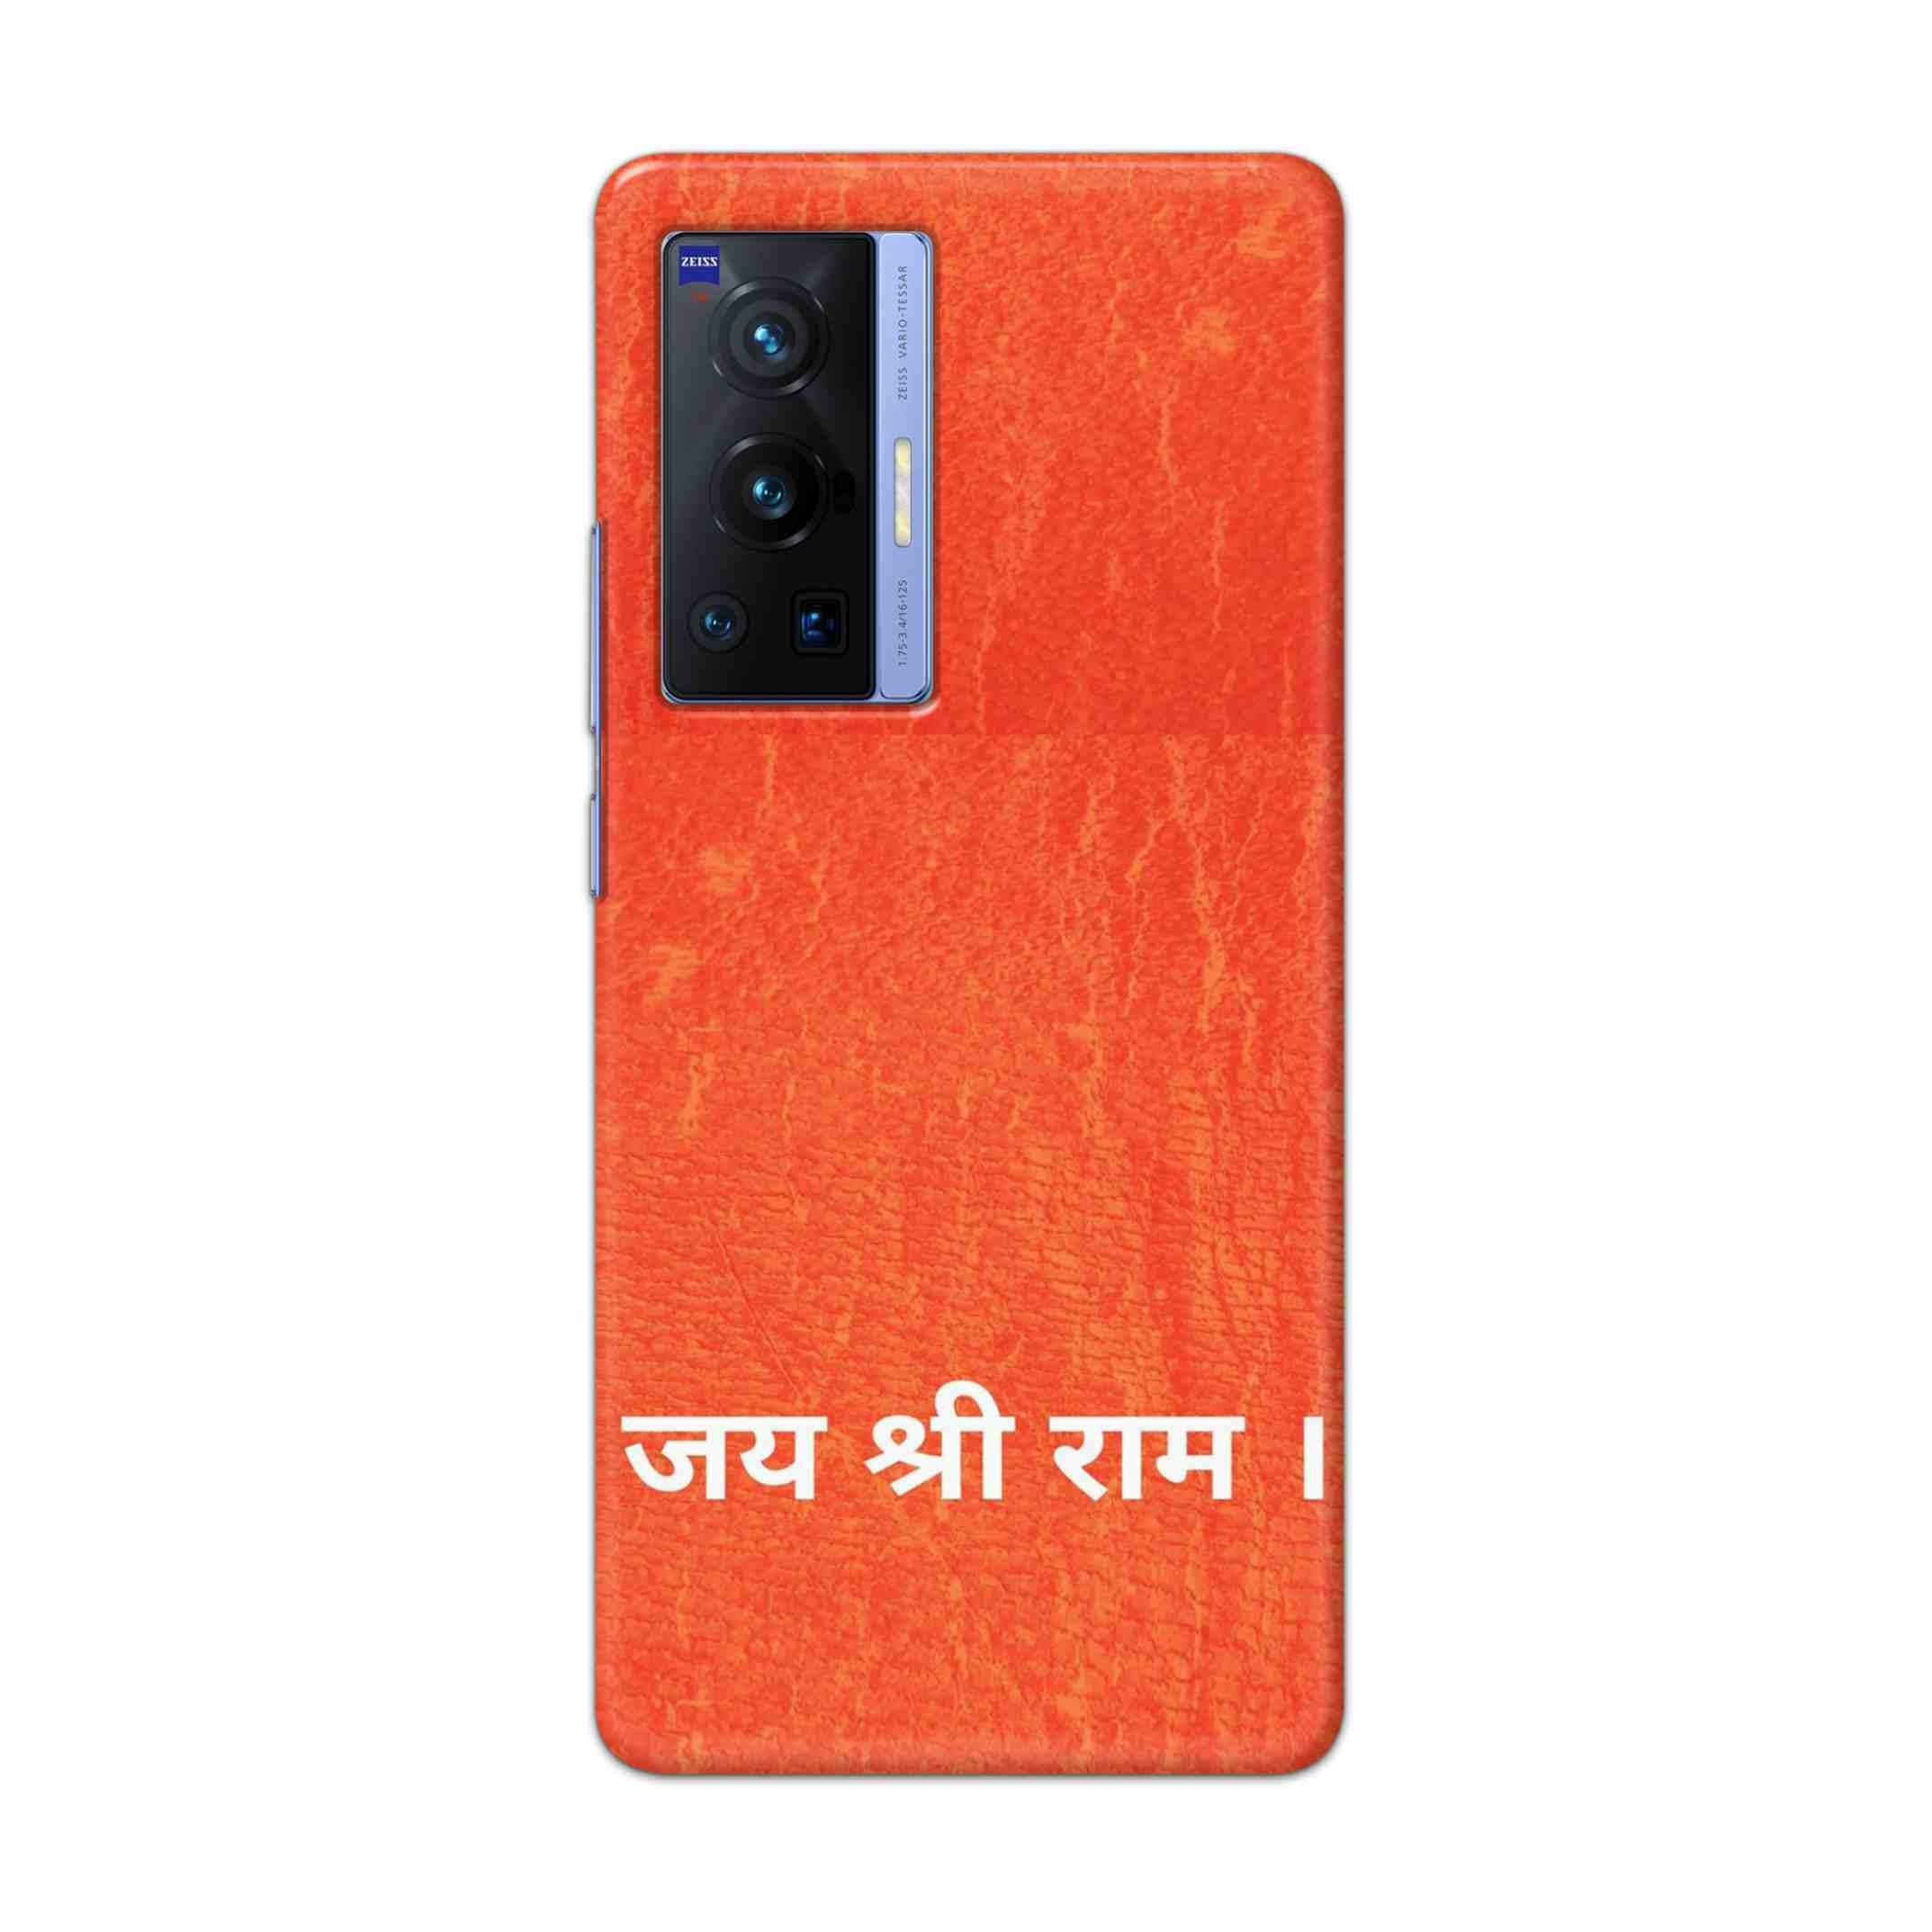 Buy Jai Shree Ram Hard Back Mobile Phone Case Cover For Vivo X70 Pro Online